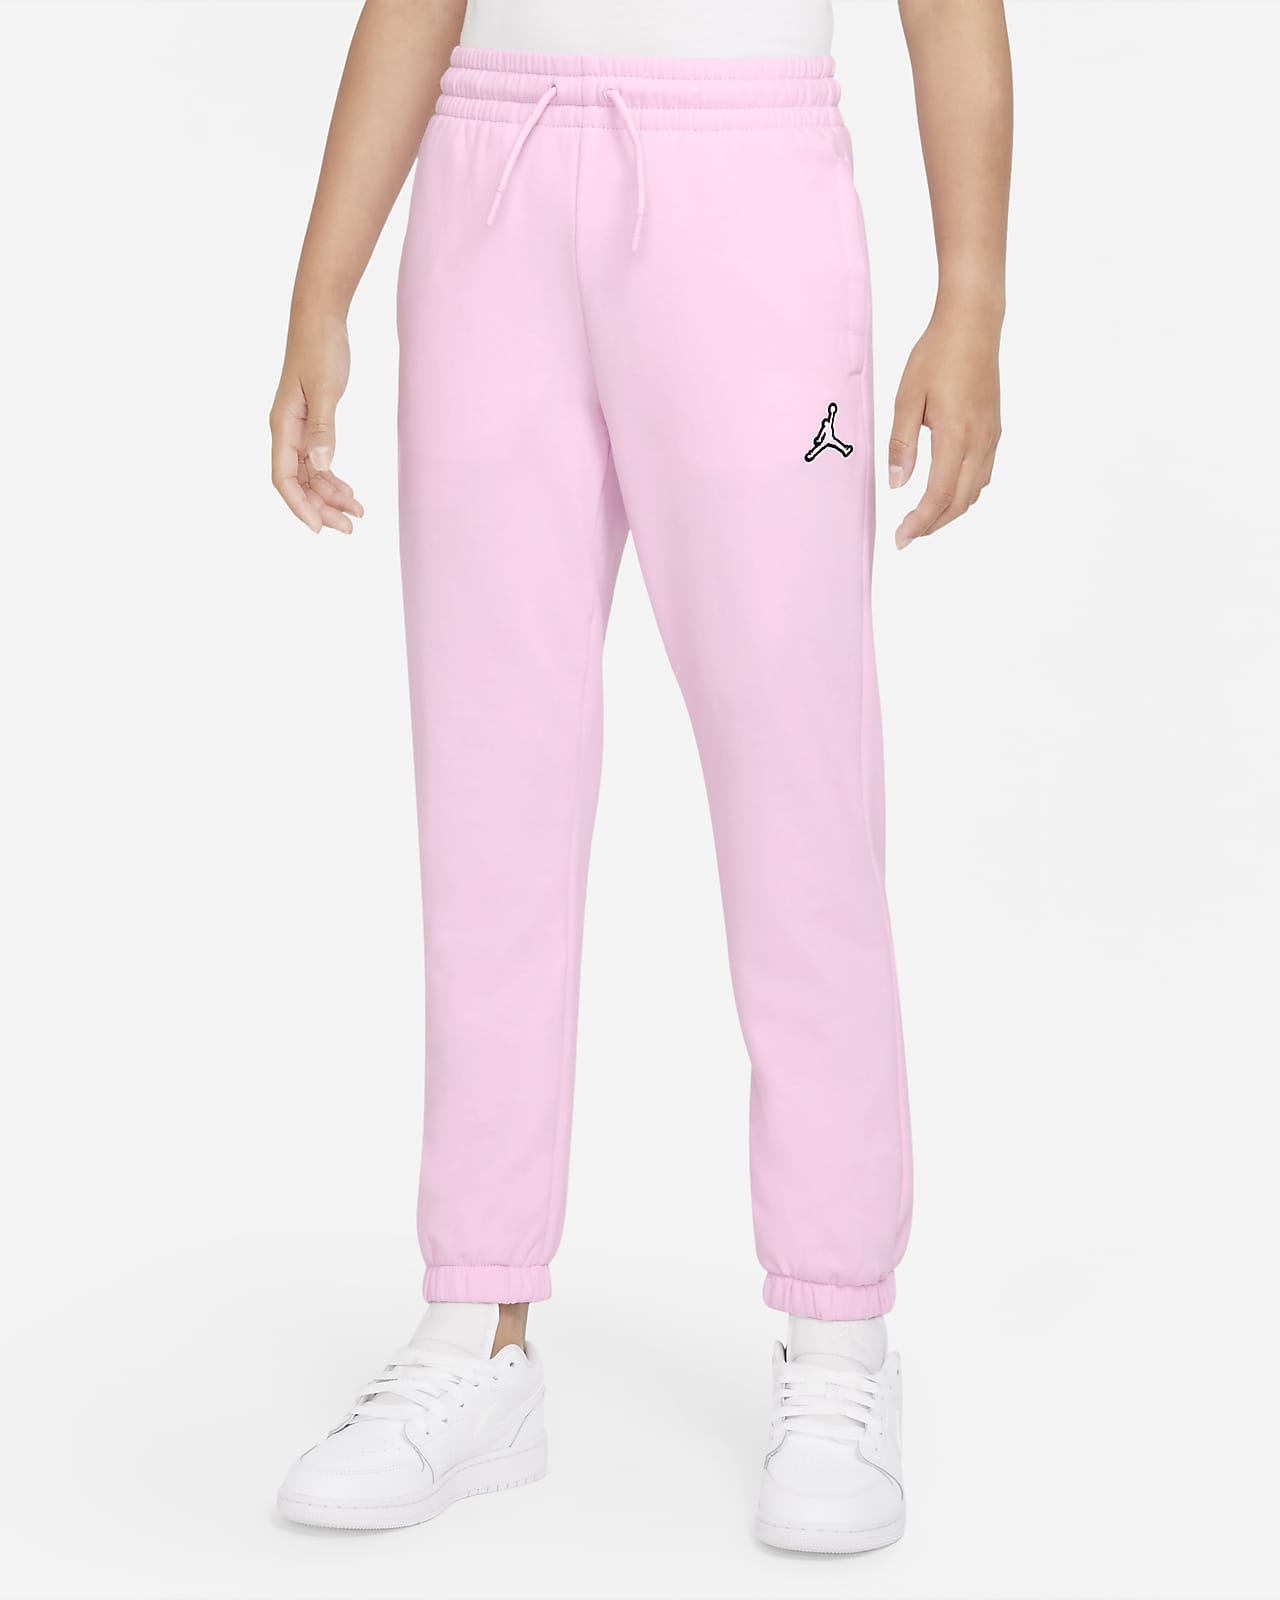 Nike Tech Fleece Kids' (Girls') Trousers Size XL, L - Possible Women's M,  S, XS | eBay